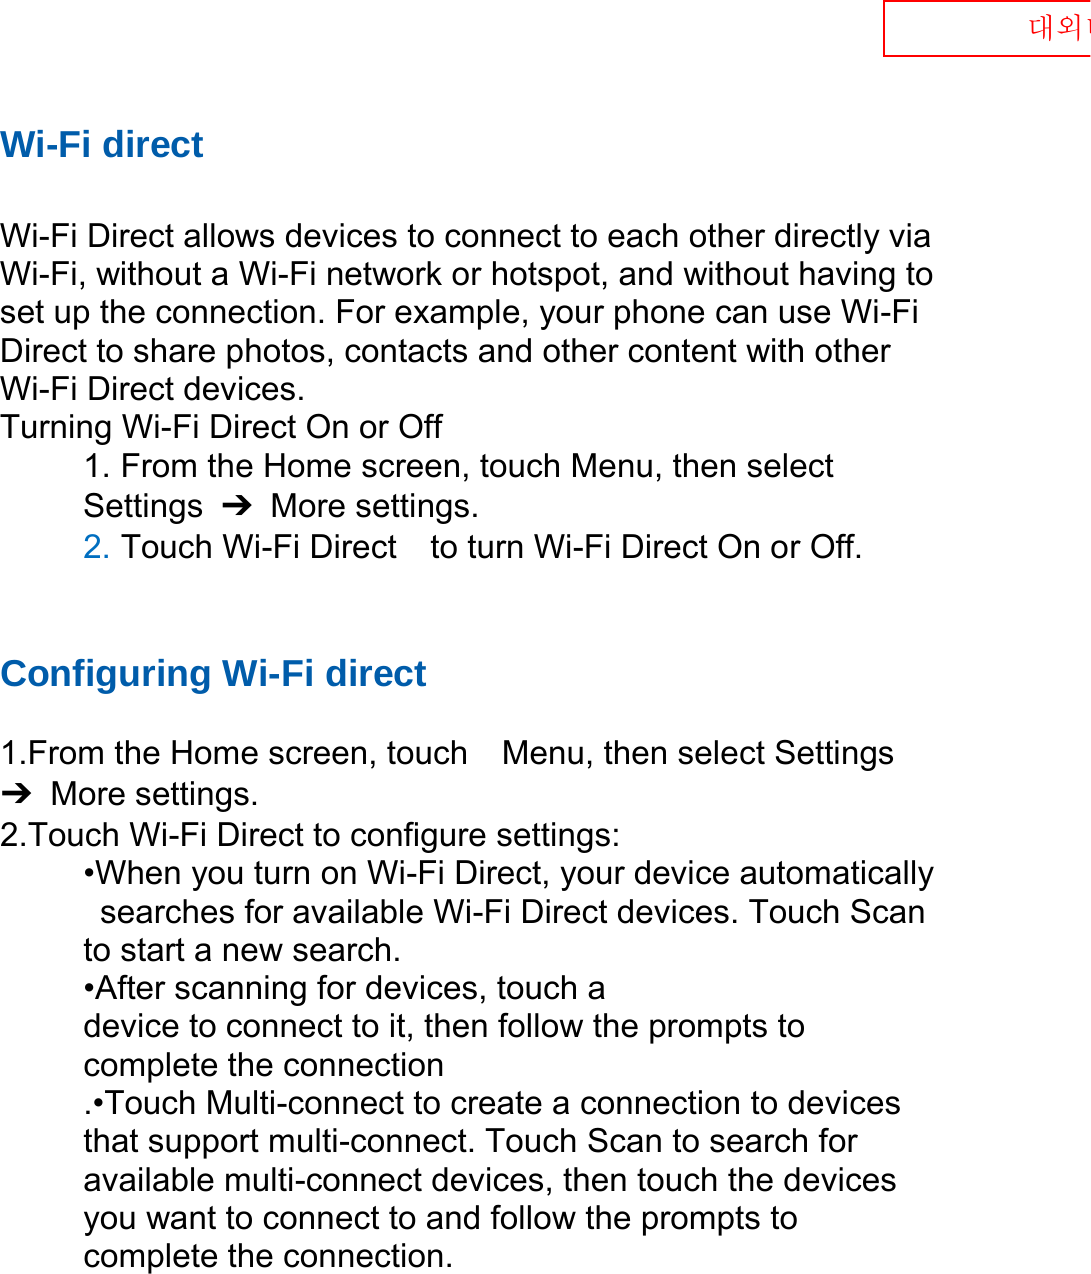  대외비 Wi-Fi direct  Wi-Fi Direct allows devices to connect to each other directly via Wi-Fi, without a Wi-Fi network or hotspot, and without having to set up the connection. For example, your phone can use Wi-Fi Direct to share photos, contacts and other content with other Wi-Fi Direct devices.   Turning Wi-Fi Direct On or Off 1. From the Home screen, touch Menu, then select   Settings  ➔  More settings. 2. Touch Wi-Fi Direct    to turn Wi-Fi Direct On or Off.   Configuring Wi-Fi direct    1.From the Home screen, touch    Menu, then select Settings ➔  More settings. 2.Touch Wi-Fi Direct to configure settings:   •When you turn on Wi-Fi Direct, your device automatically   searches for available Wi-Fi Direct devices. Touch Scan   to start a new search. •After scanning for devices, touch a   device to connect to it, then follow the prompts to   complete the connection .•Touch Multi-connect to create a connection to devices that support multi-connect. Touch Scan to search for available multi-connect devices, then touch the devices you want to connect to and follow the prompts to complete the connection.